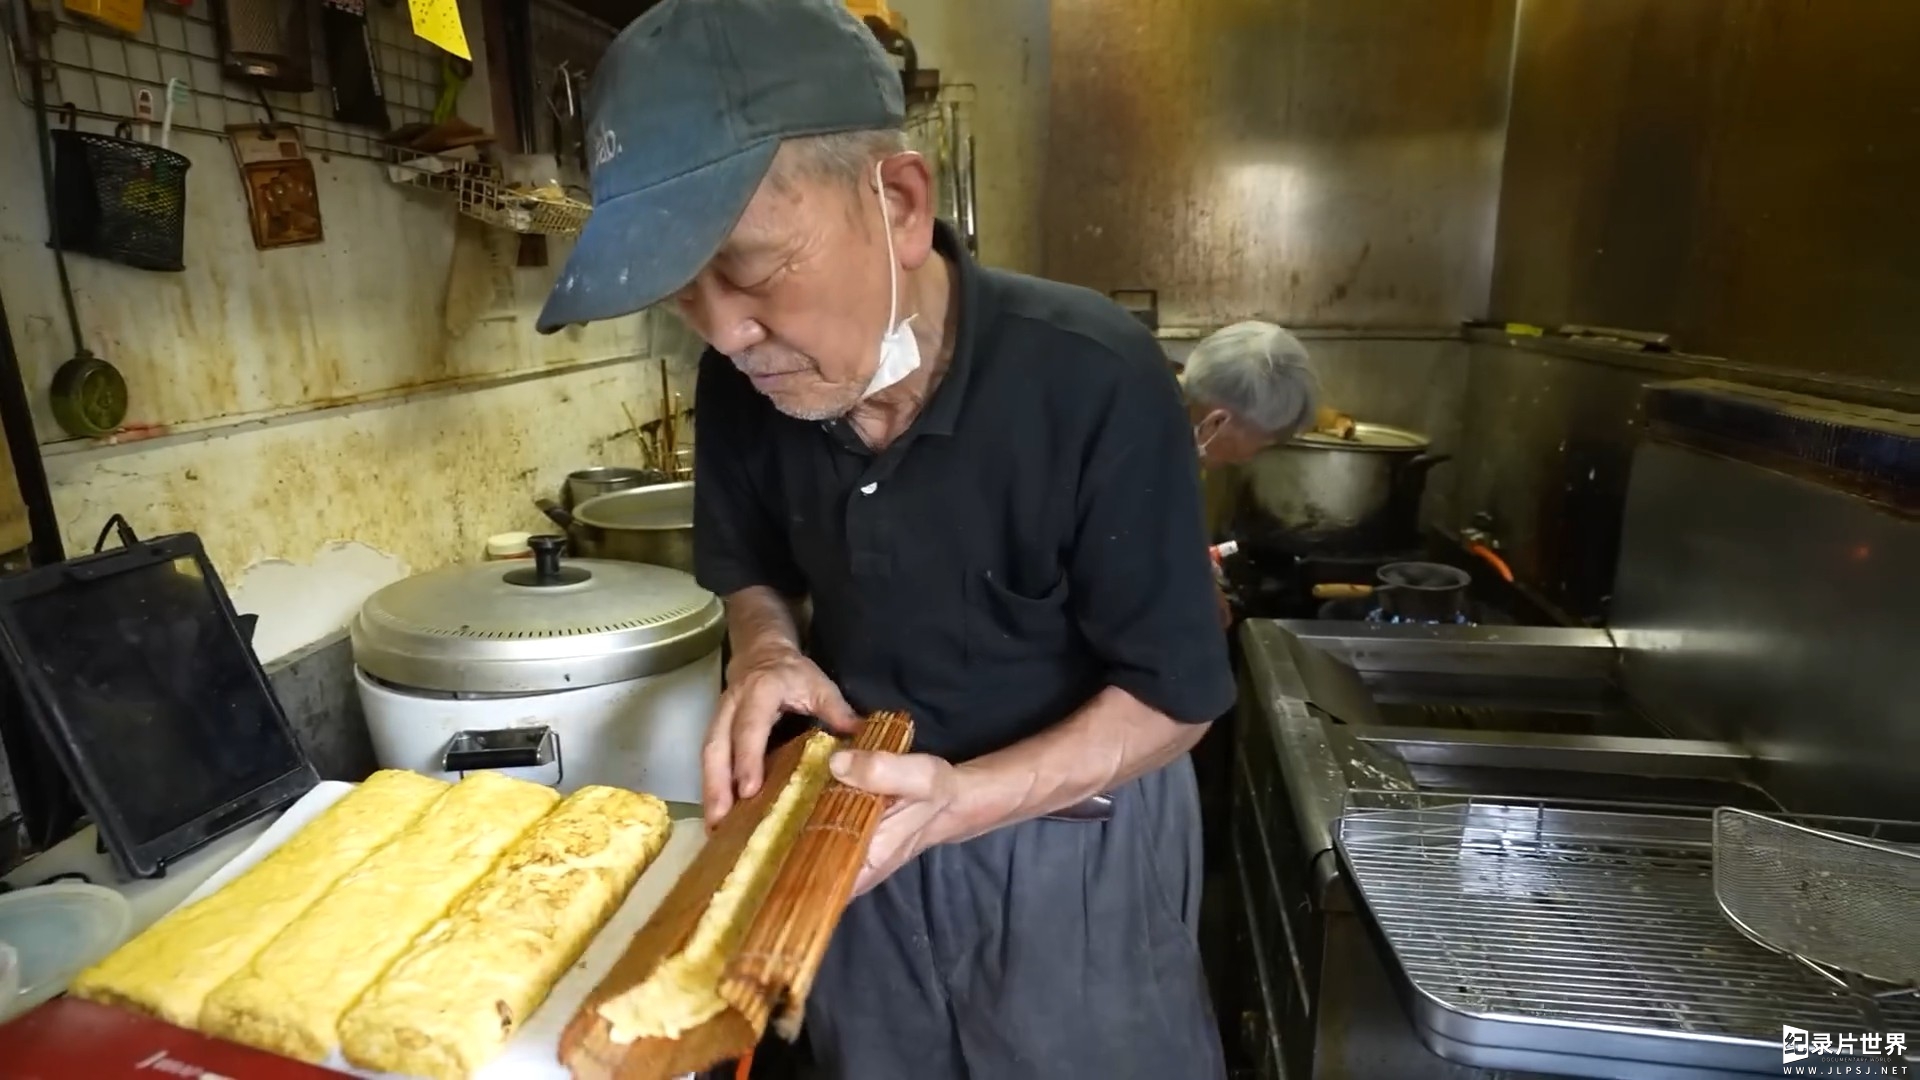 日本纪录片/美食与匠人精神纪录片《凌晨四点的寿司店》全1集